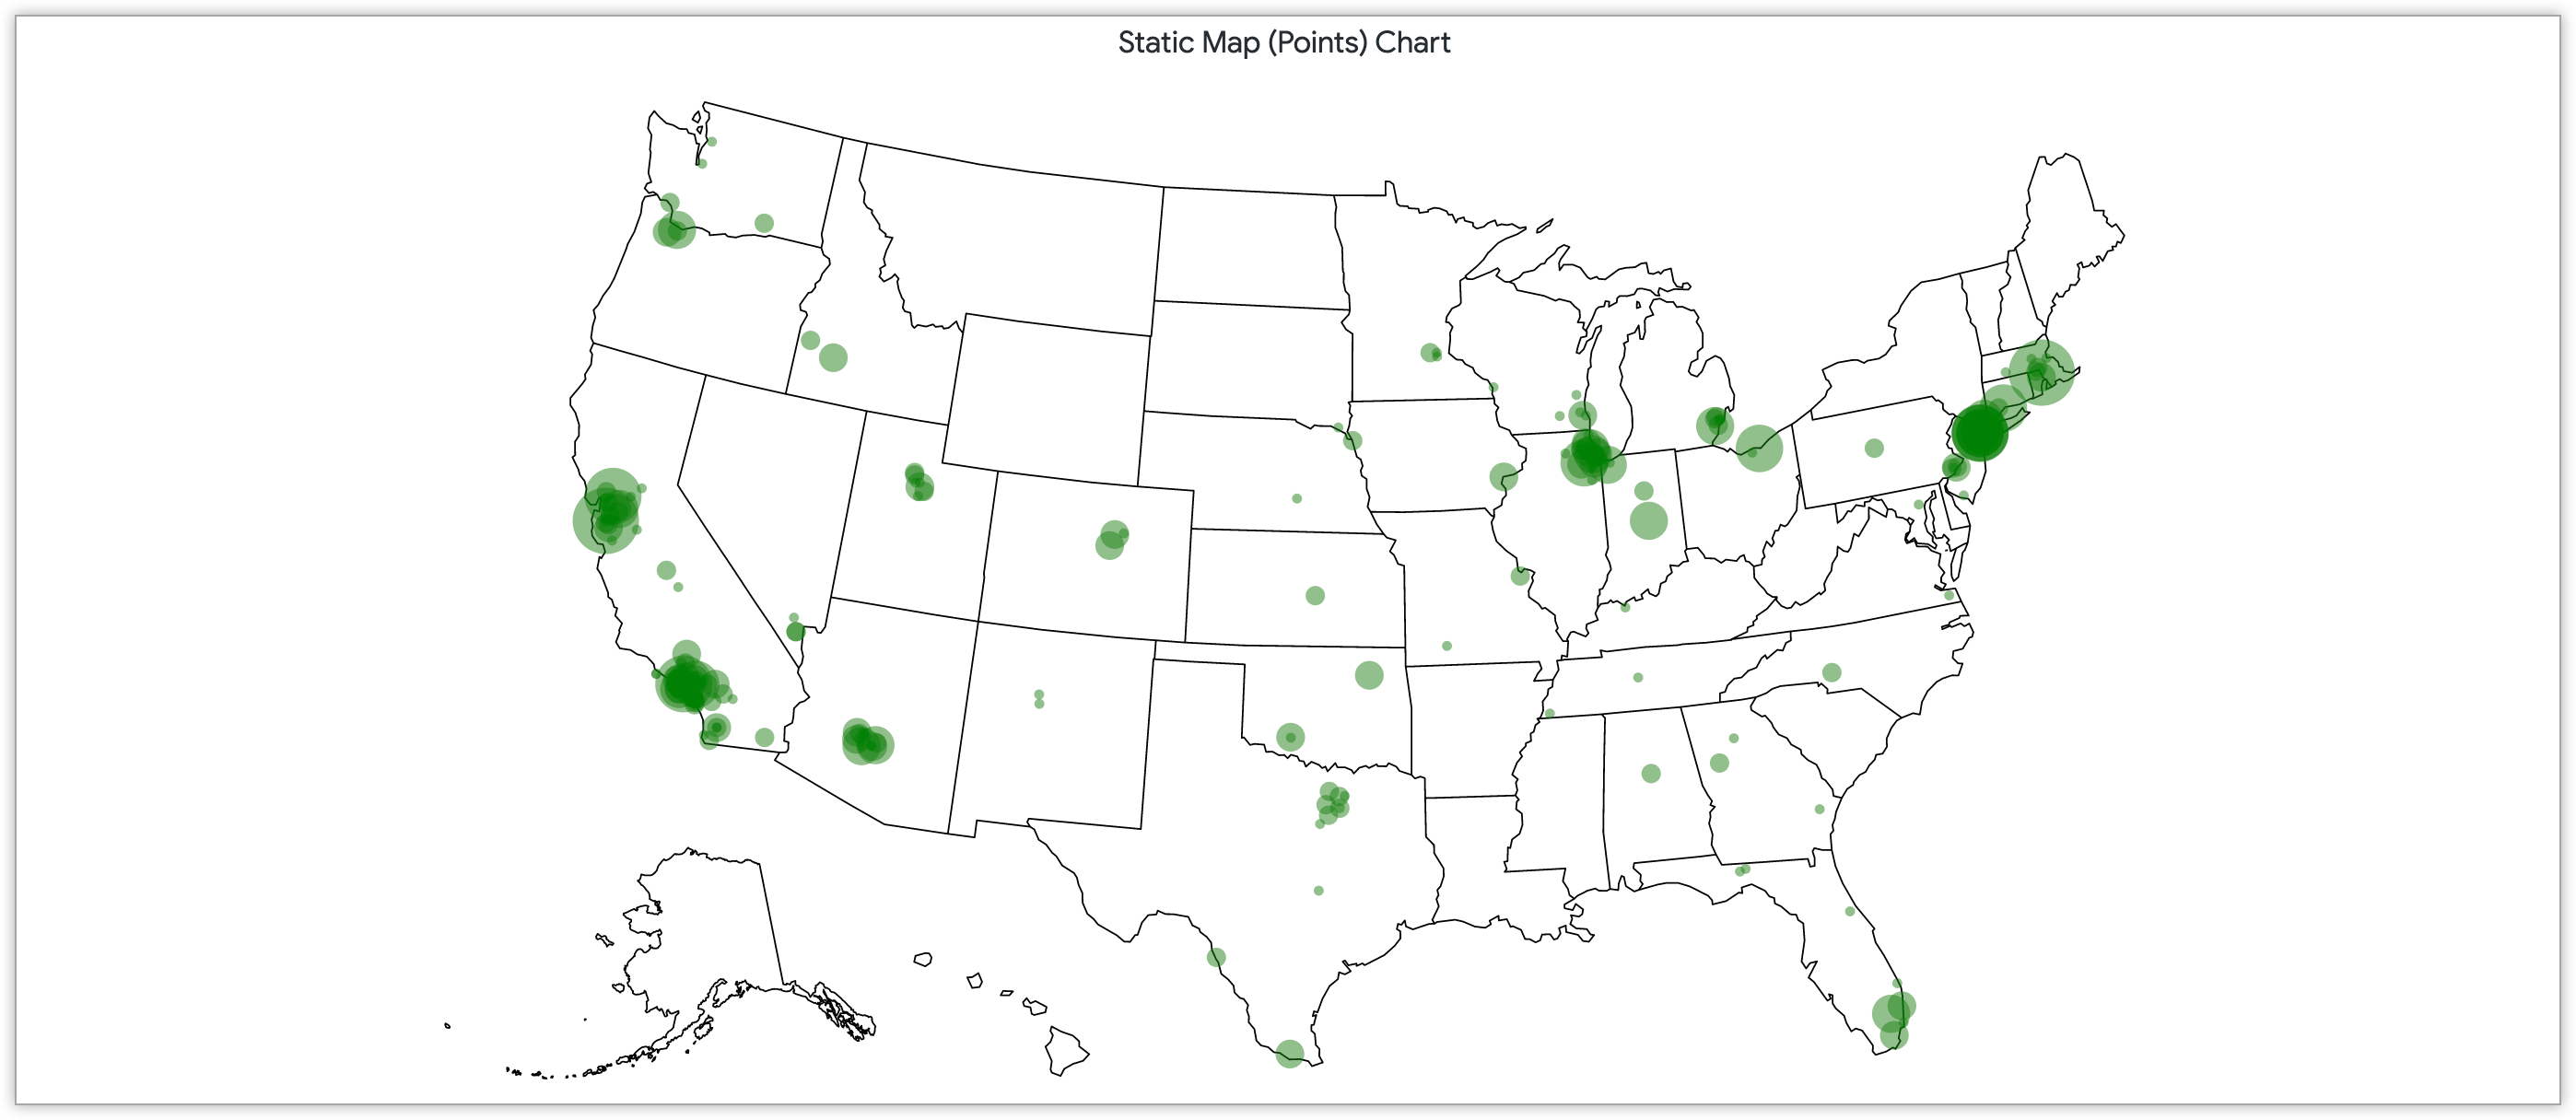 미국 전역의 우편번호에 고객 수에 따라 크기가 지정된 포인트가 있는 정적 지도 차트